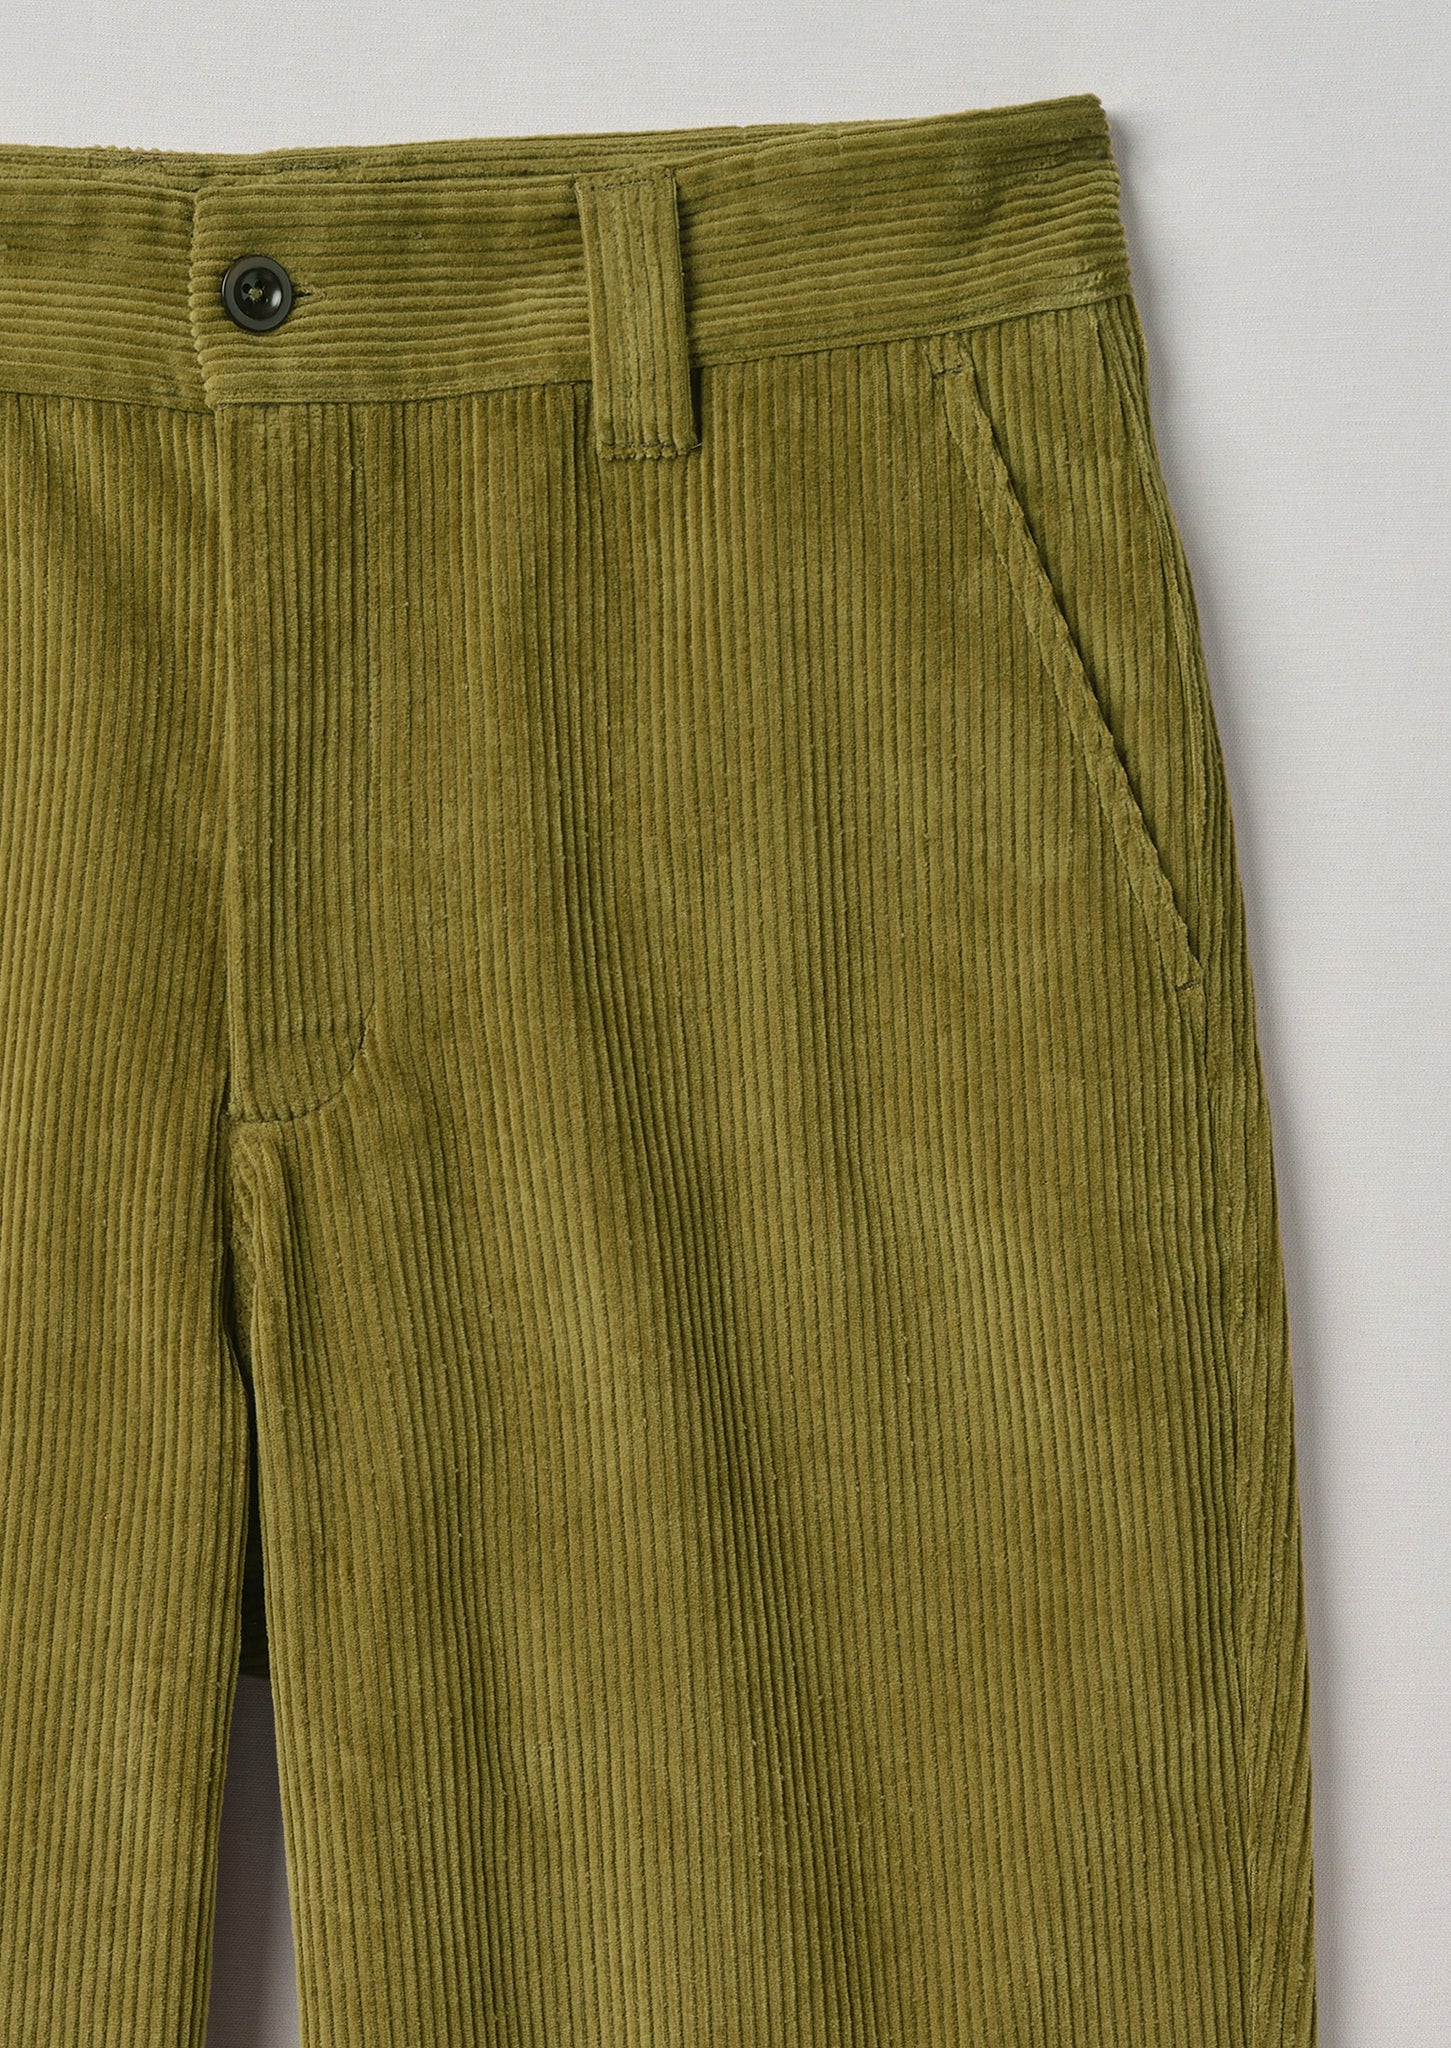 Corduroy trousers in Green: Luxury Italian Trousers for Men | Boglioli®